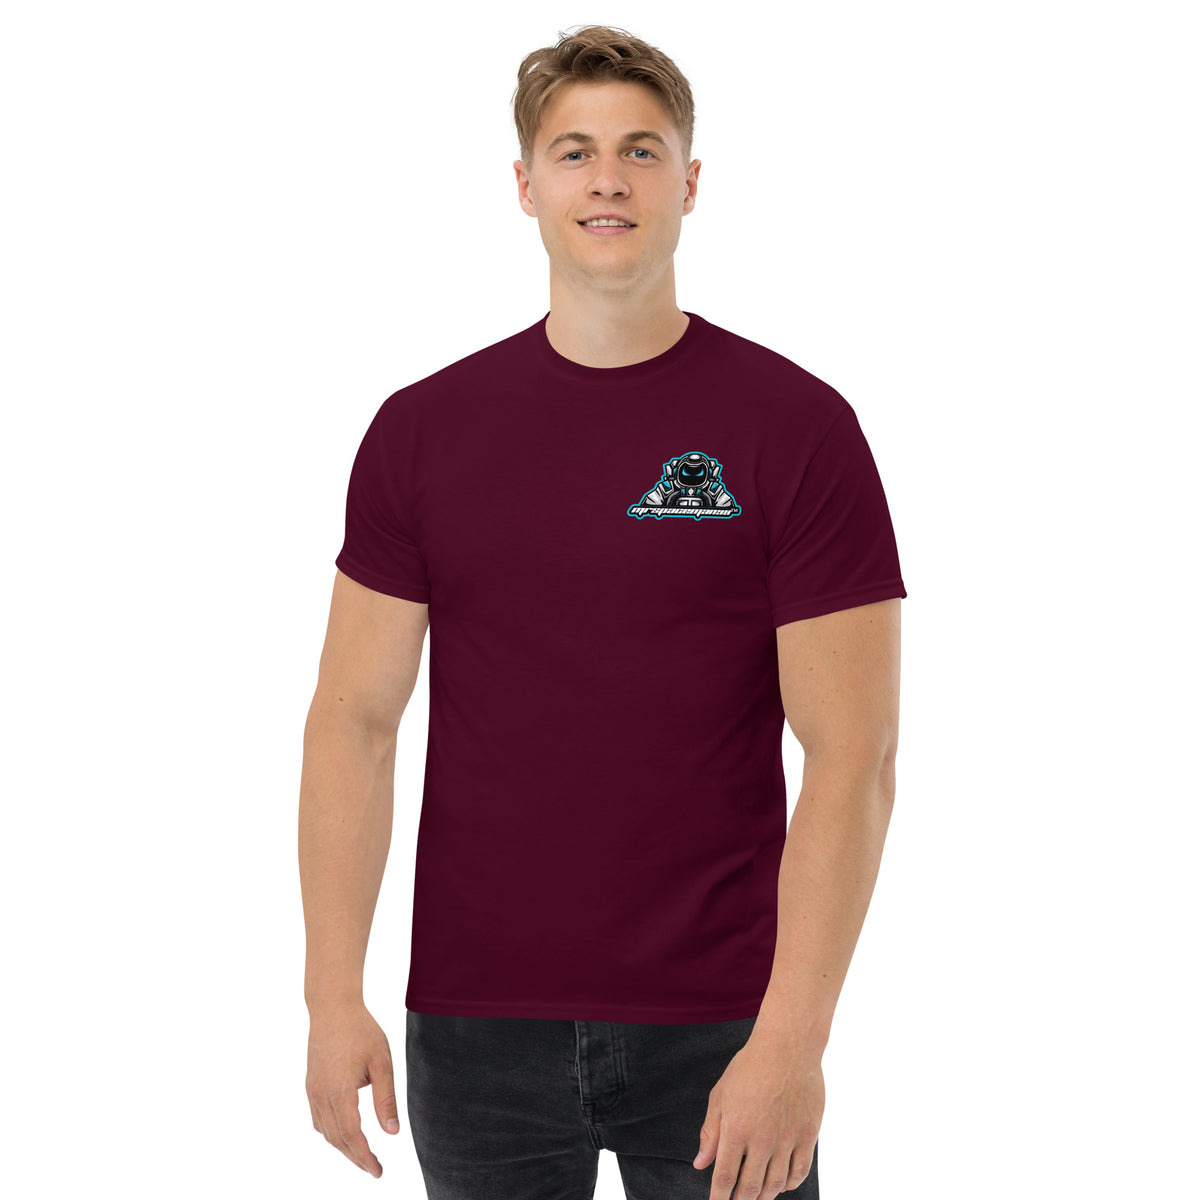 MrSpaceman98 - Herren-T-Shirt mit Druck